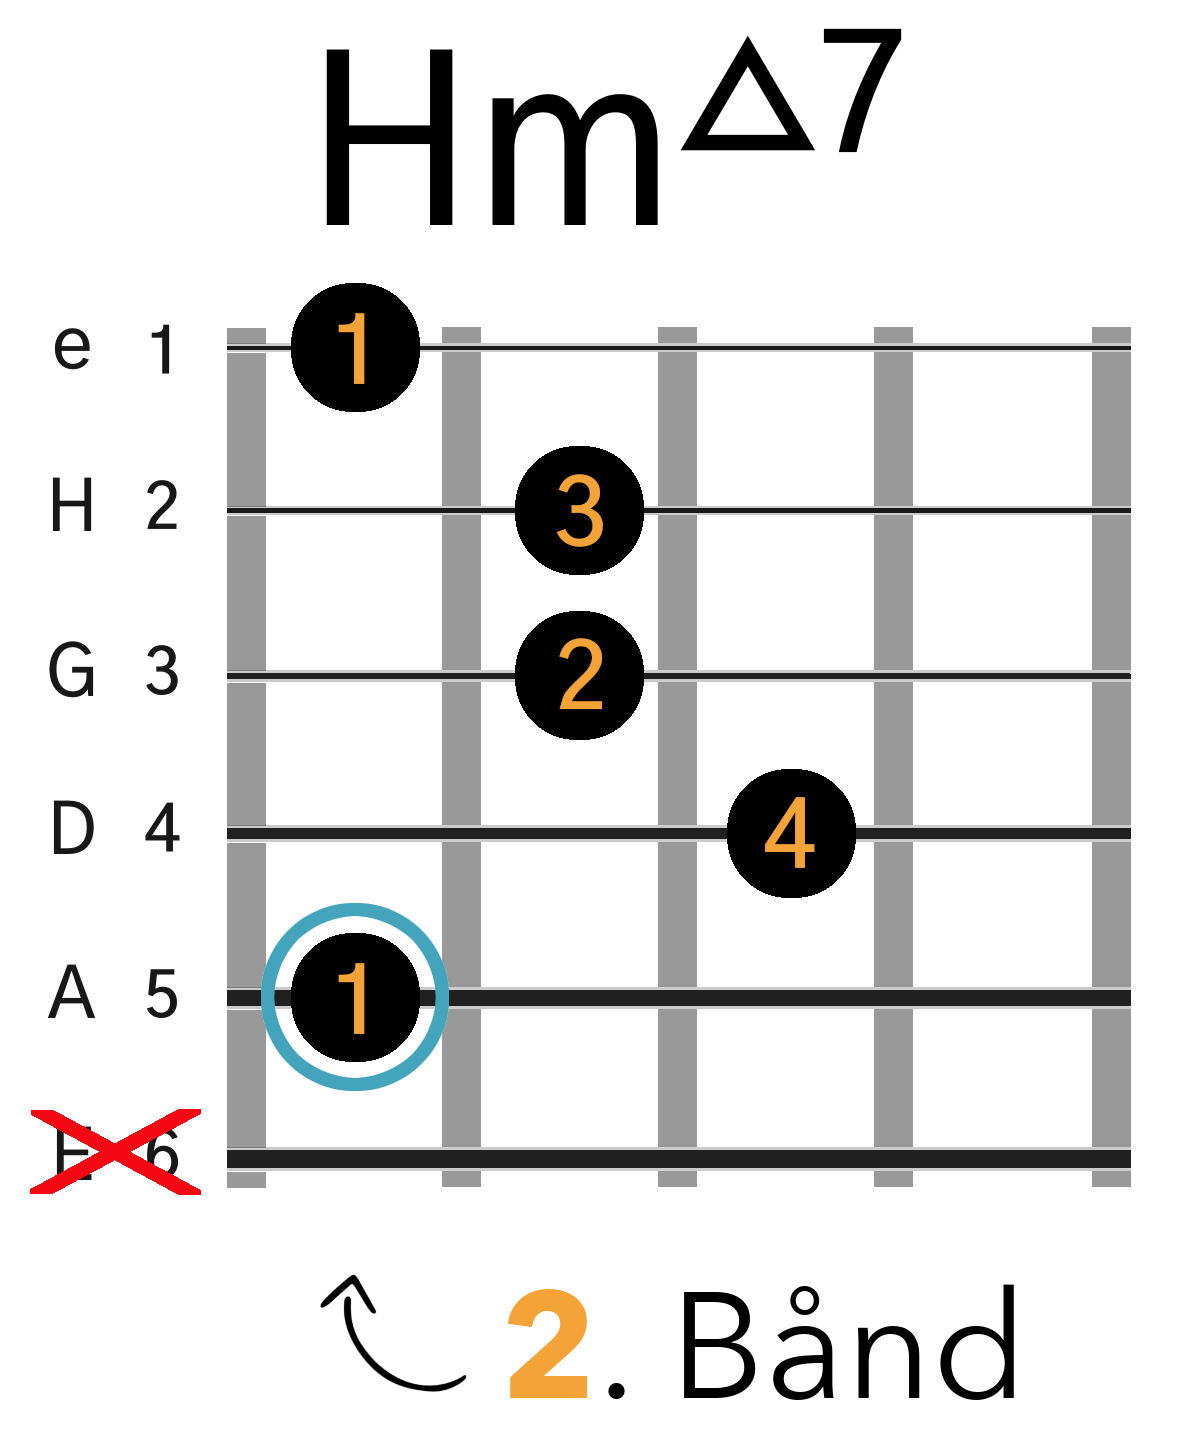 Grafik af hvordan man tager en Hm(maj7) (Bm(maj7)) barré akkord (A-form) på guitar